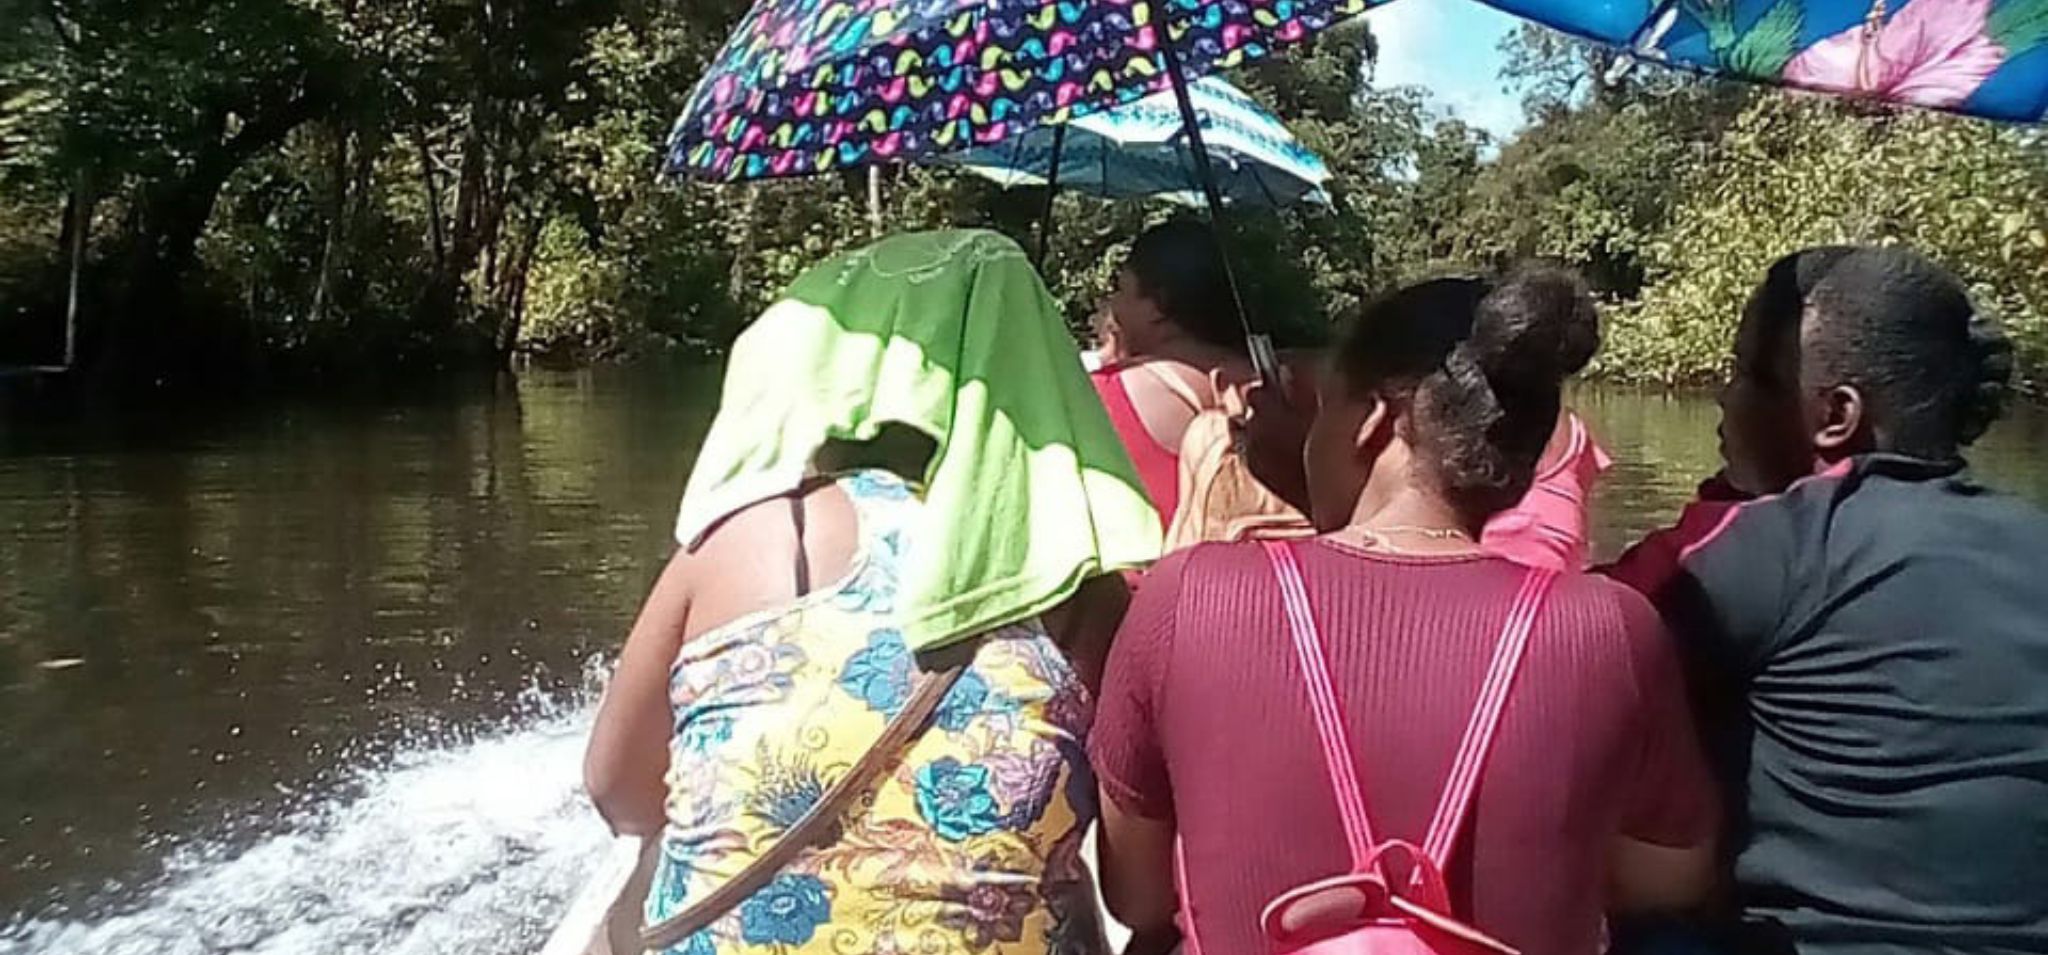 Pessoas segurando um guarda-chuva para se proteger do sol enquanto navegam em uma canoa